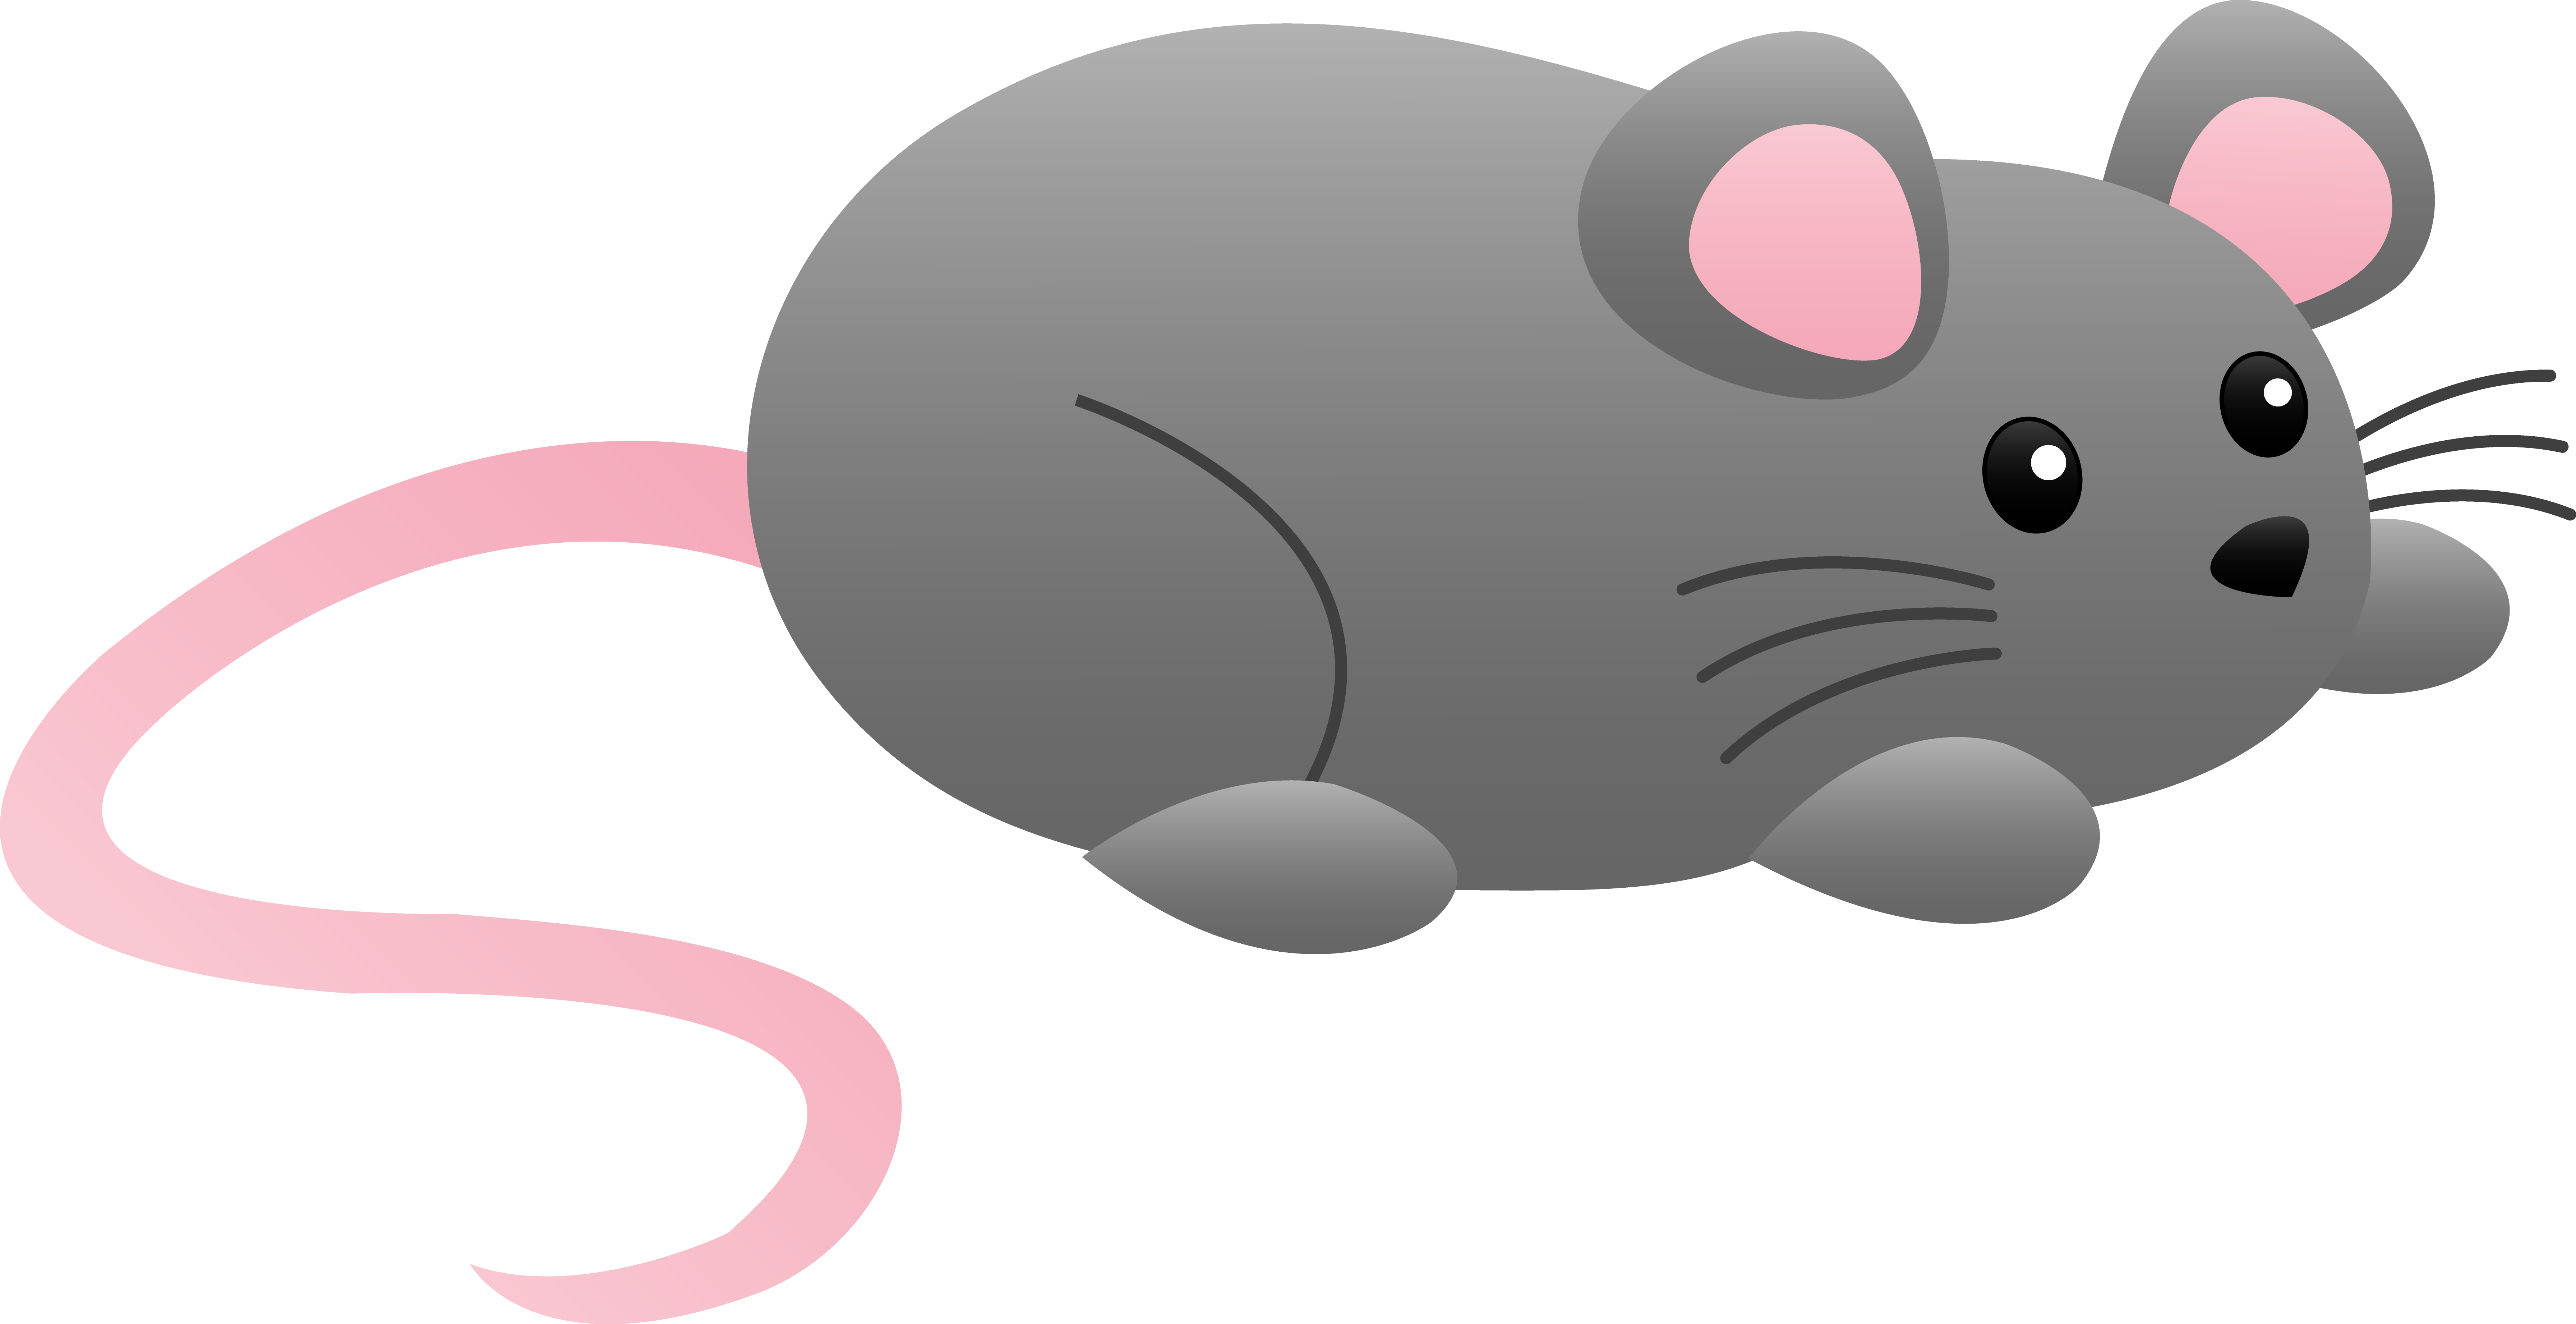 Картинки мышь для детей на прозрачном фоне. Мультяшные мышки. Мышка для детей. Мышка без фона. Мышка рисунок.